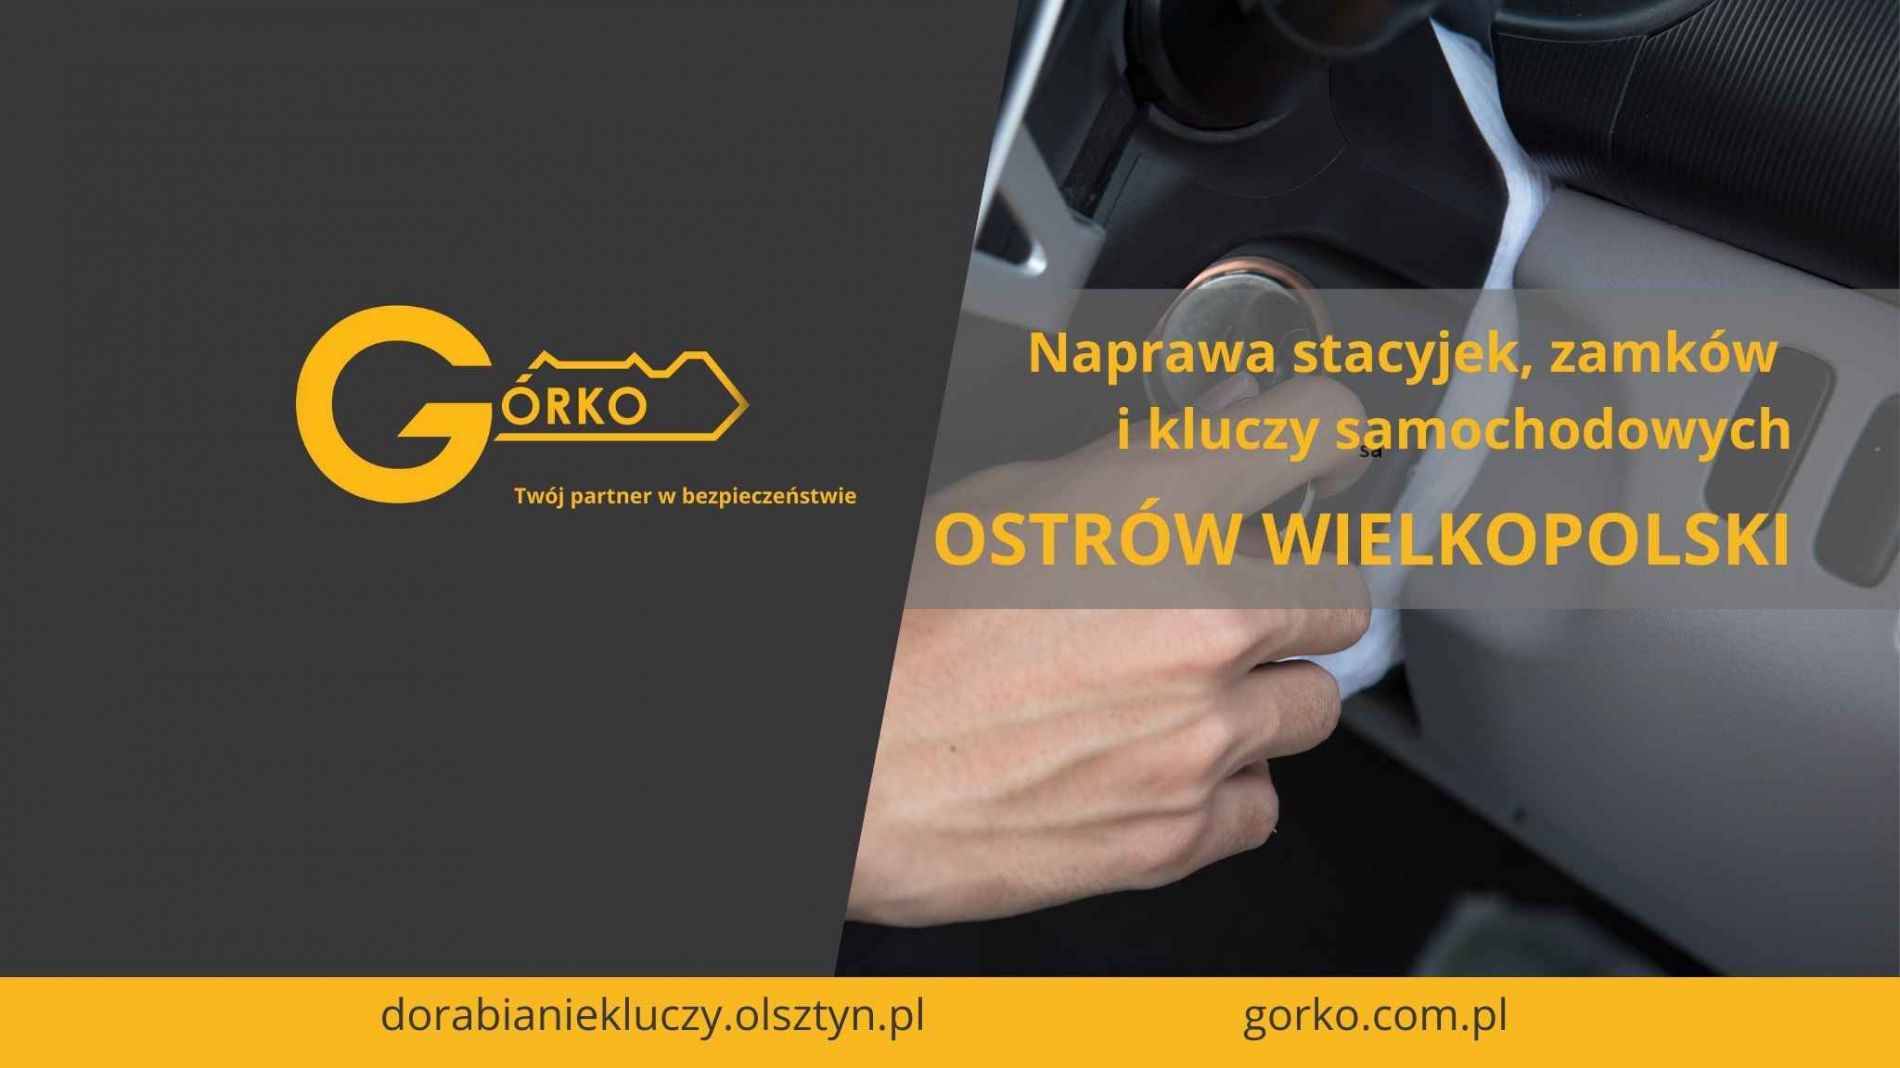 Naprawa stacyjek, zamków, kluczy samochodowych oraz dorabianie kluczy nietypowych – Ostrów Wielkopolski (Usługa zdalna)